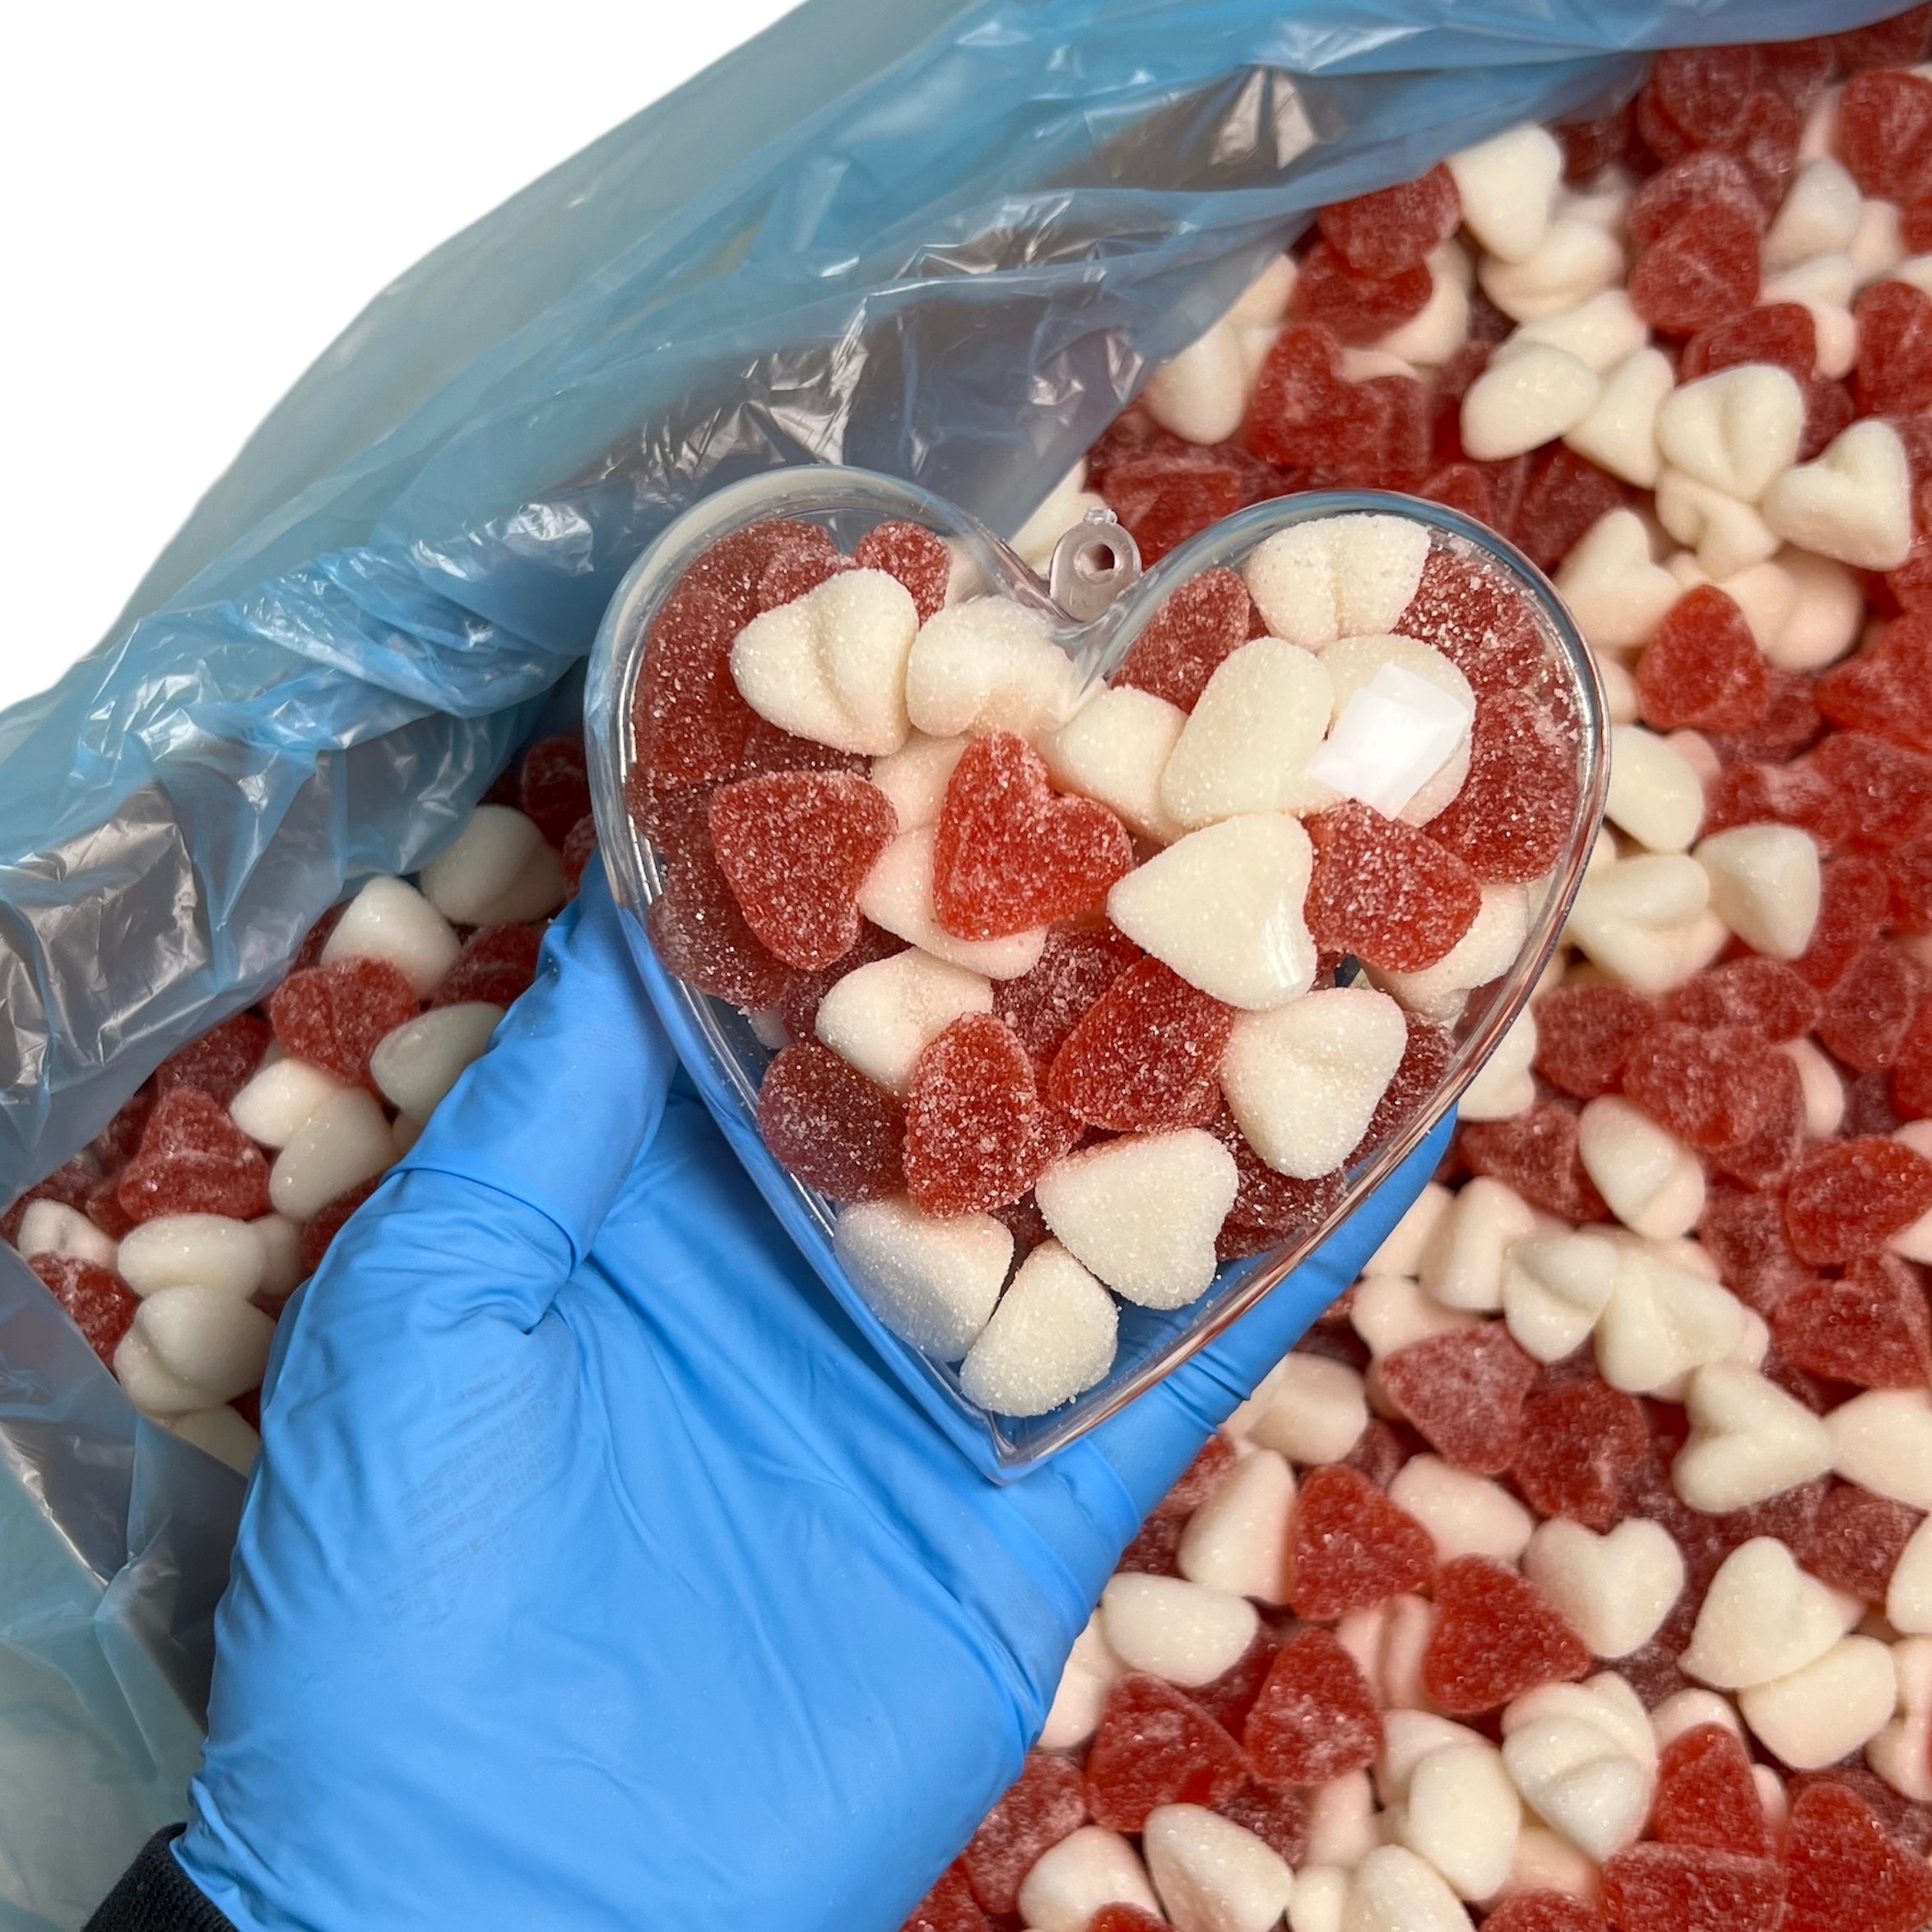 Plastic hart gevuld met fruit snoepjes